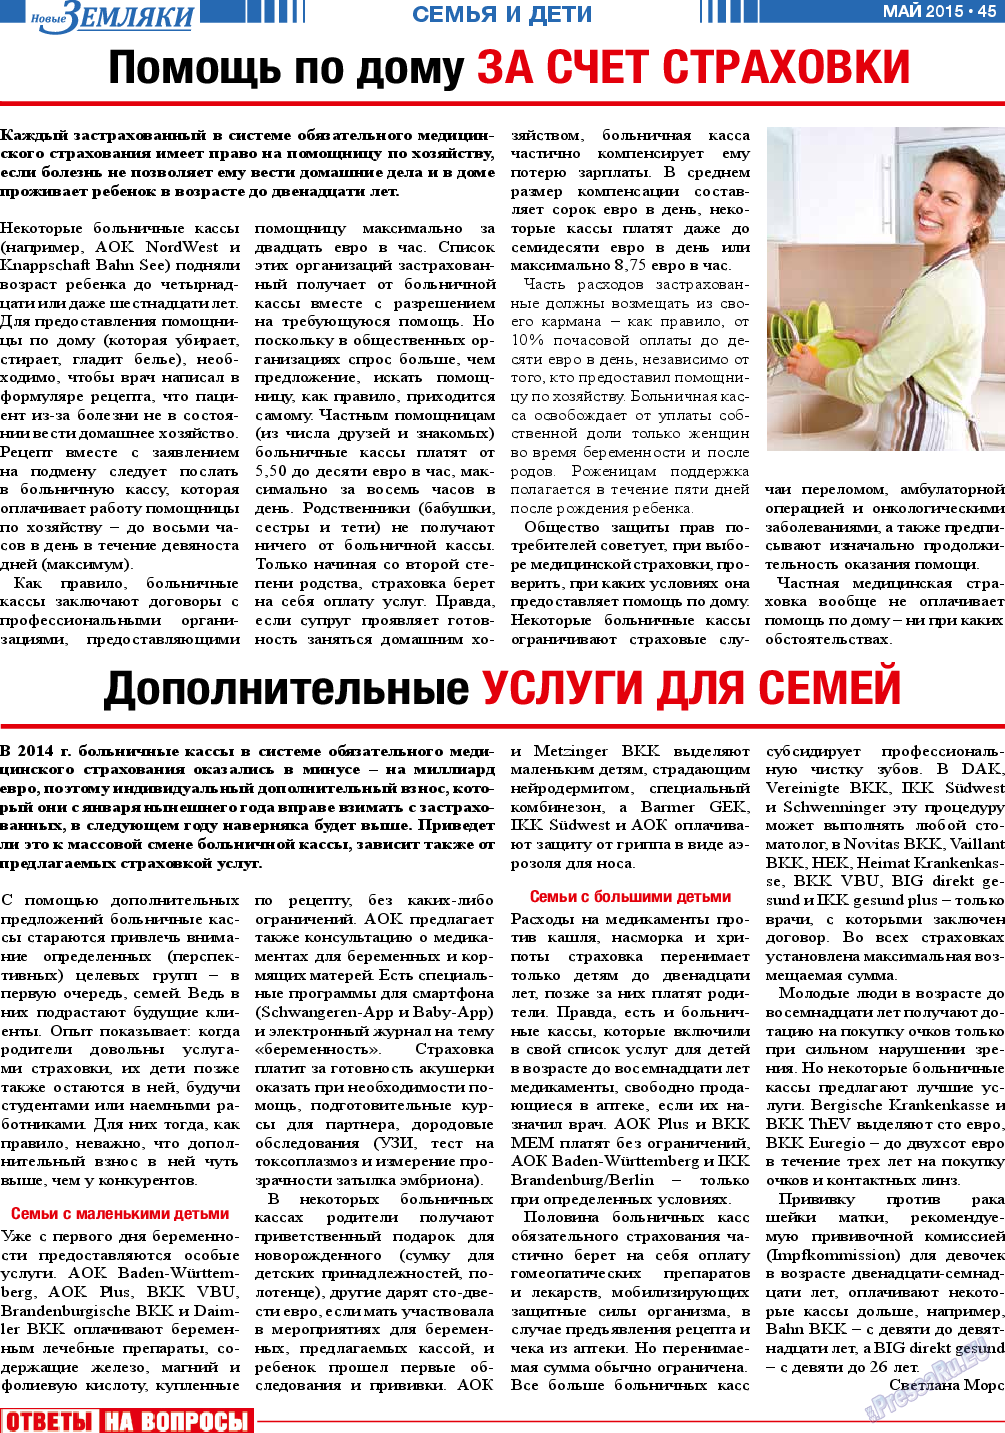 Новые Земляки (газета). 2015 год, номер 5, стр. 45